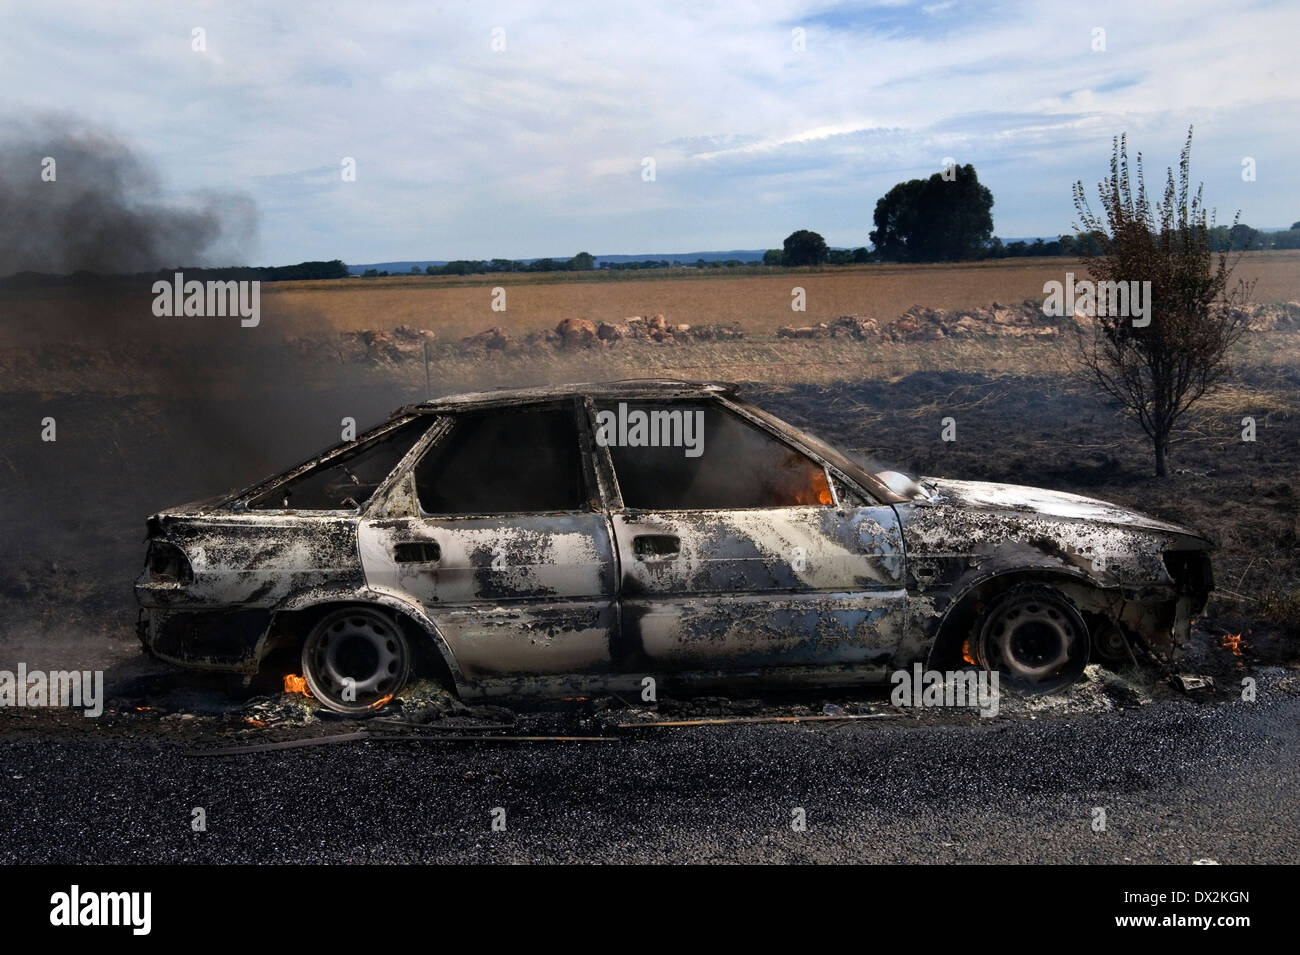 burnt out car smoking Stock Photo